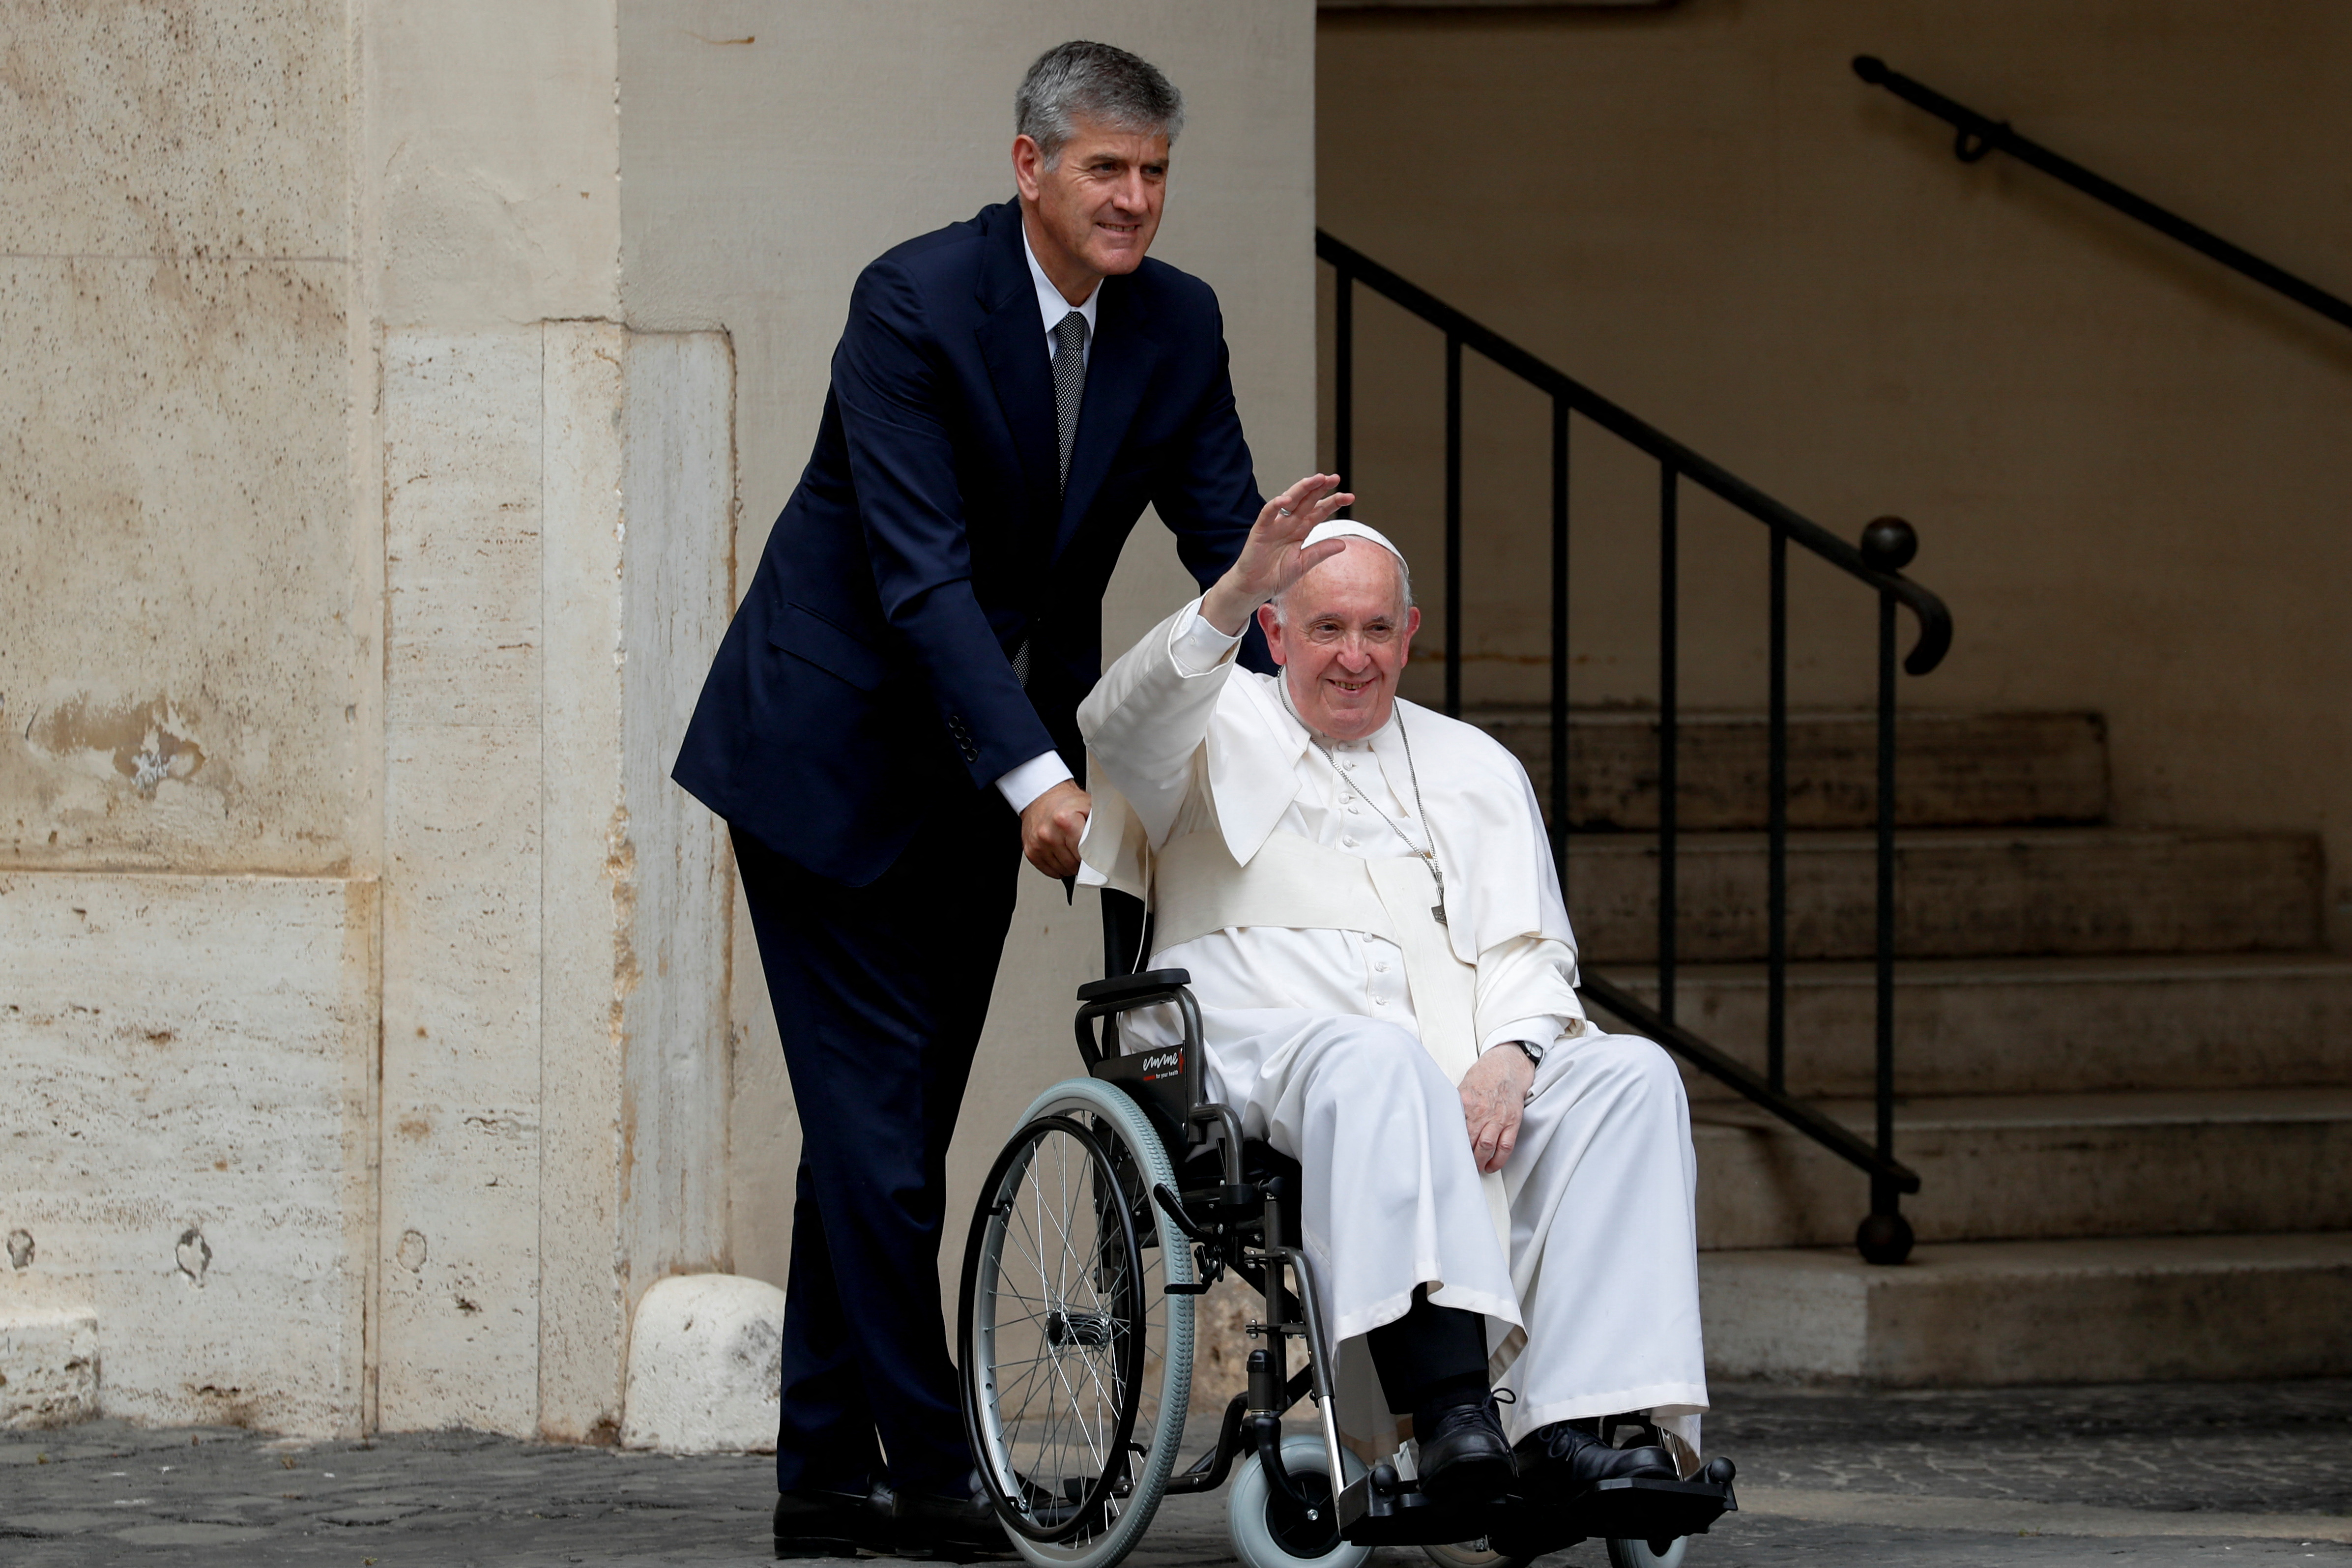 El Papa Francisco saluda mientras se va en silla de ruedas después de reunirse con niños con discapacidades y niños ucranianos que huyeron de su país debido a la invasión de Rusia, en el Vaticano, el 4 de junio de 2022. REUTERS/Remo Casilli 